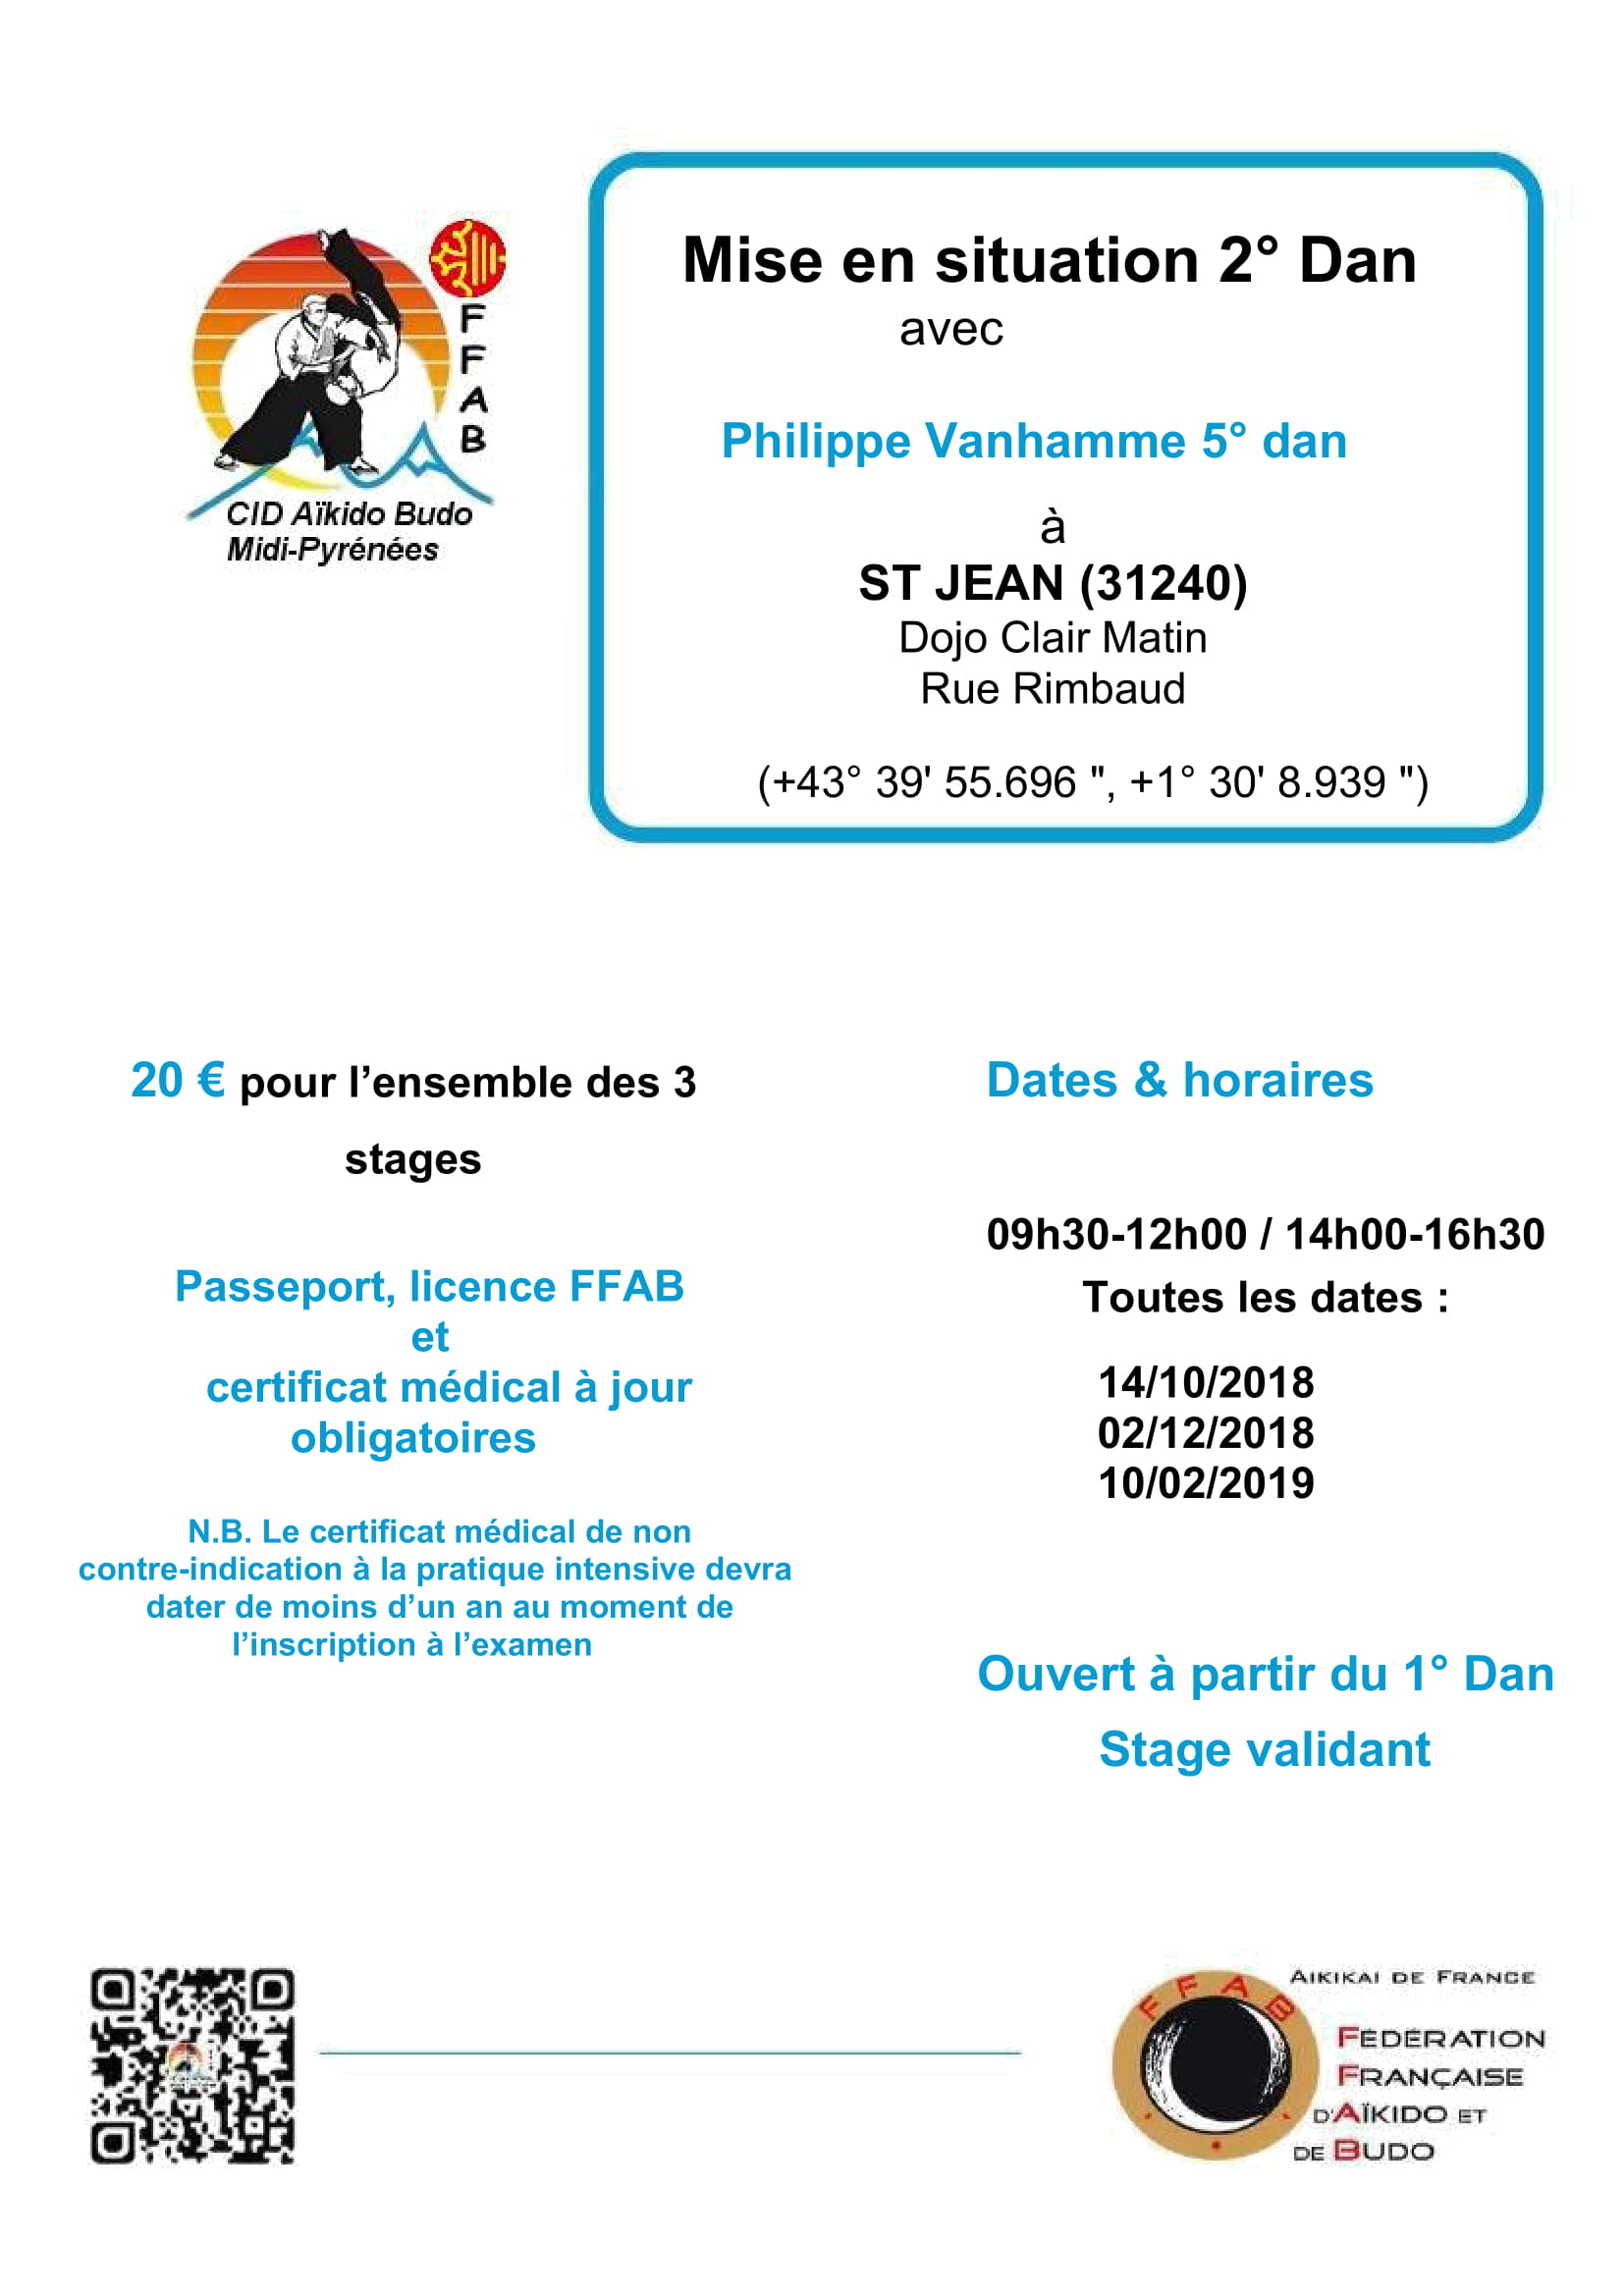 Dimanche 10 février 2019 - Mise en situation 2° Dan à Saint-Jean